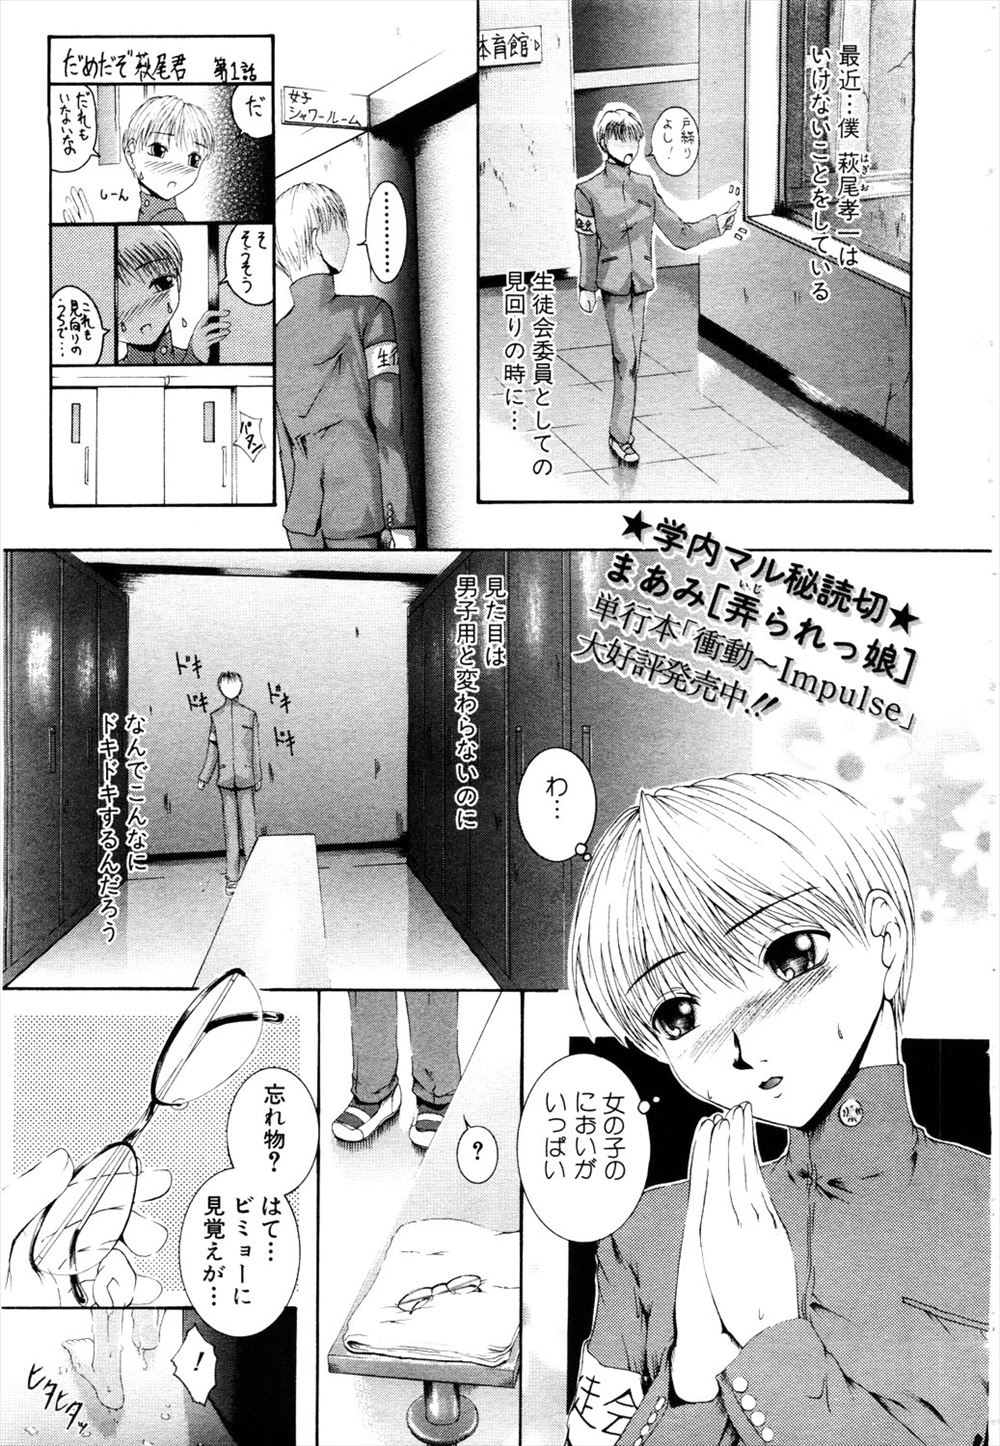 【エロ漫画】生徒会の役員が女子のシャワールームの見回りをしていたときに目の悪いクラスメイトに出くわすが誰かわかってないみたいなのでいたずらしたったｗｗｗ